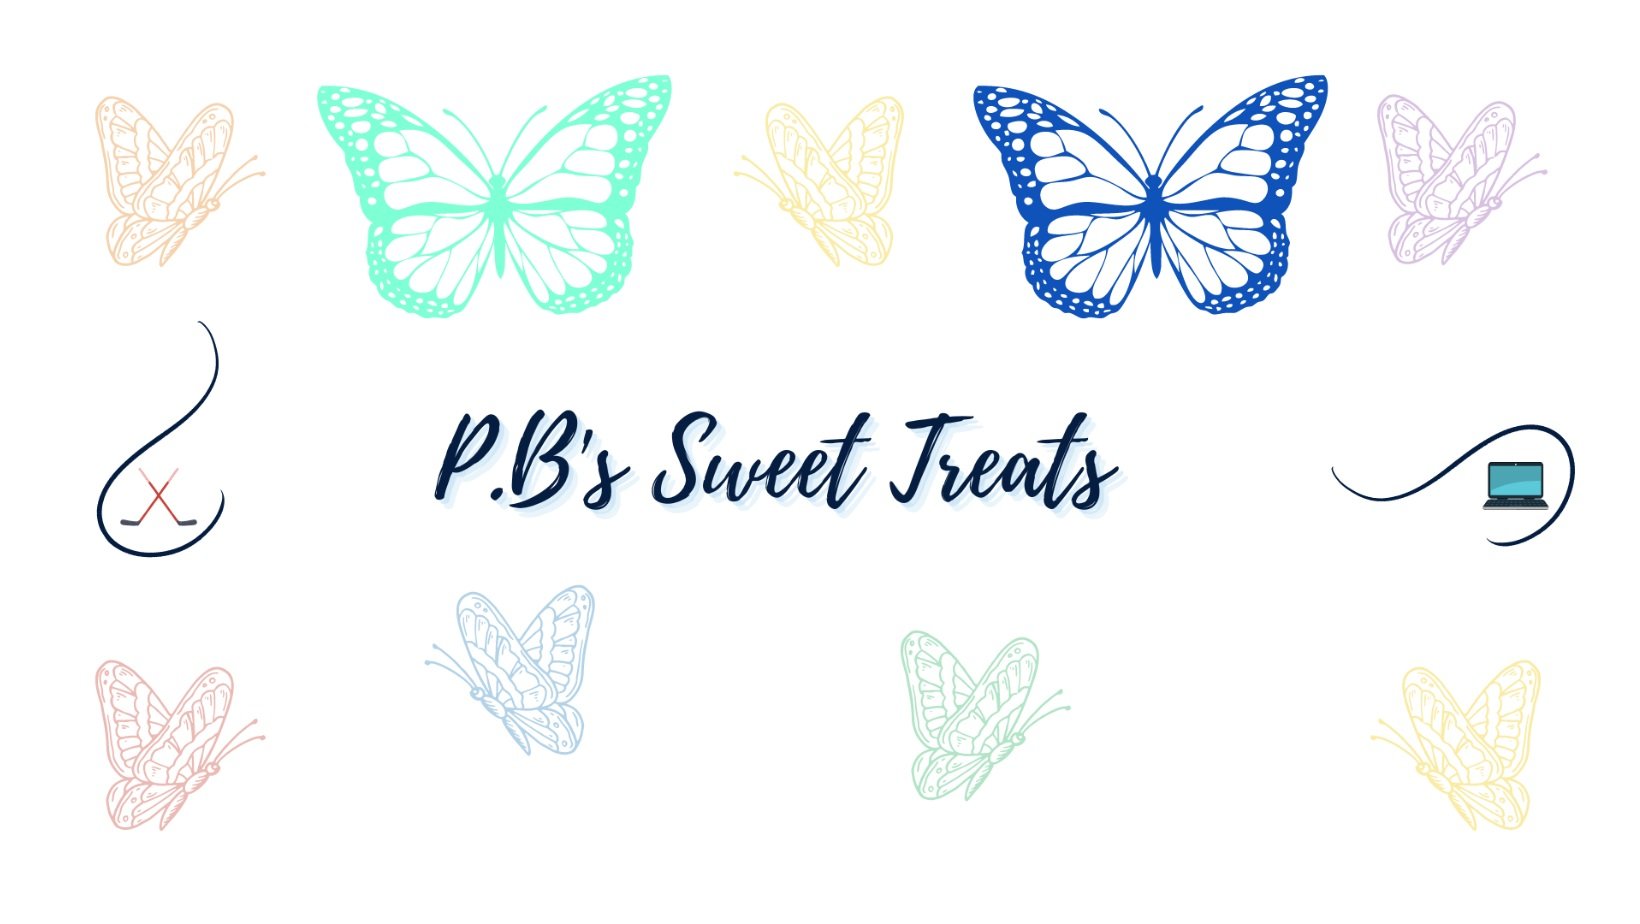 P.B.'s Sweet Treats